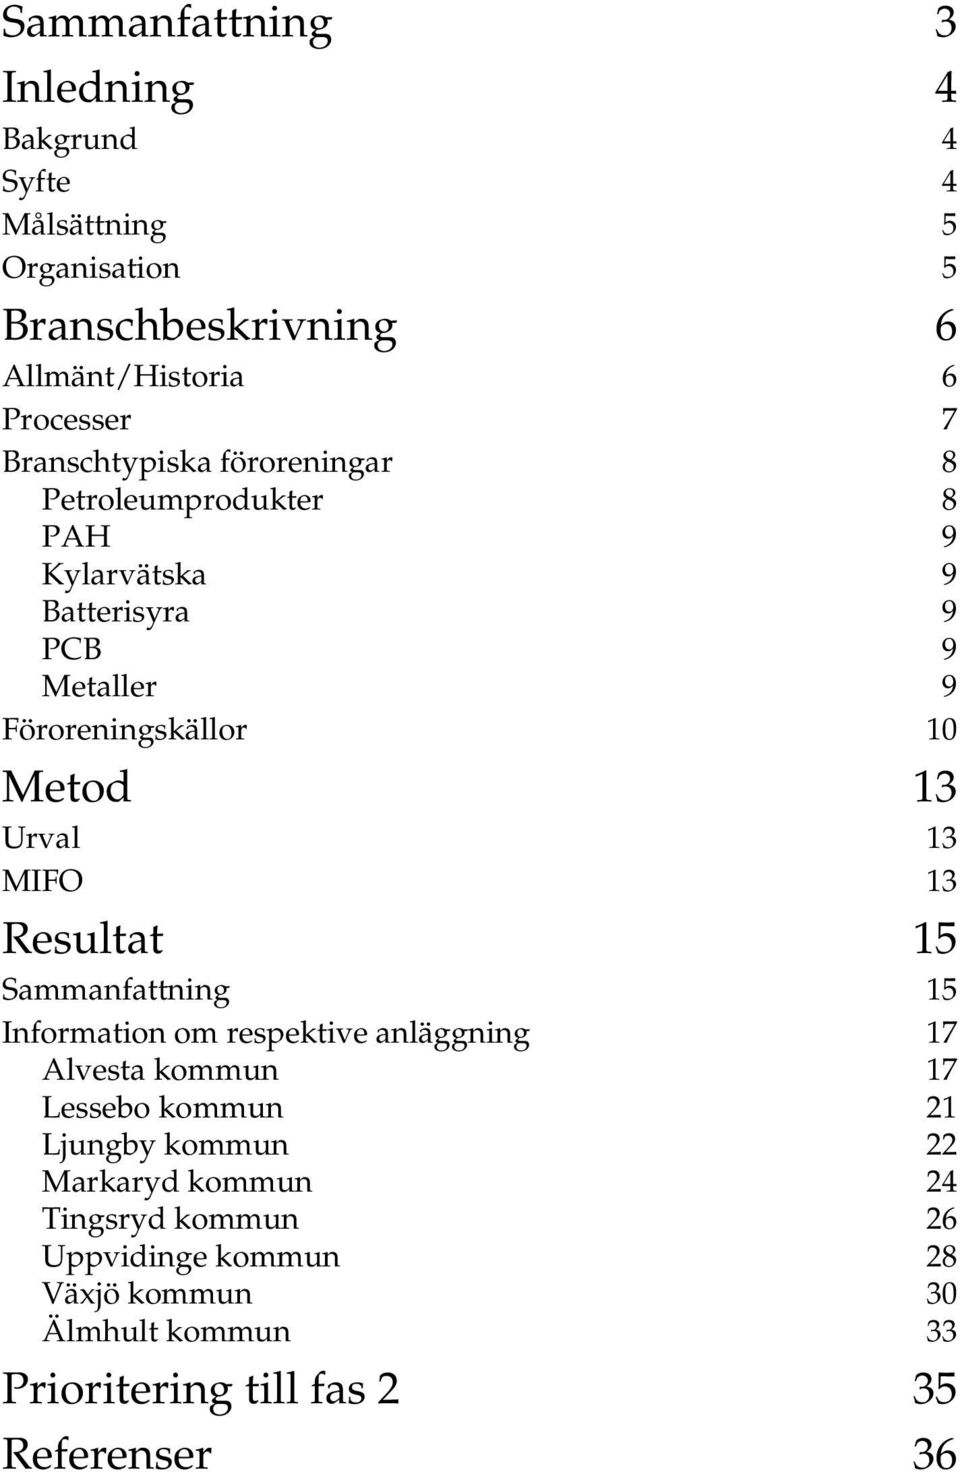 Urval 13 MIFO 13 Resultat 15 Sammanfattning 15 Information om respektive anläggning 17 Alvesta kommun 17 Lessebo kommun 21 Ljungby